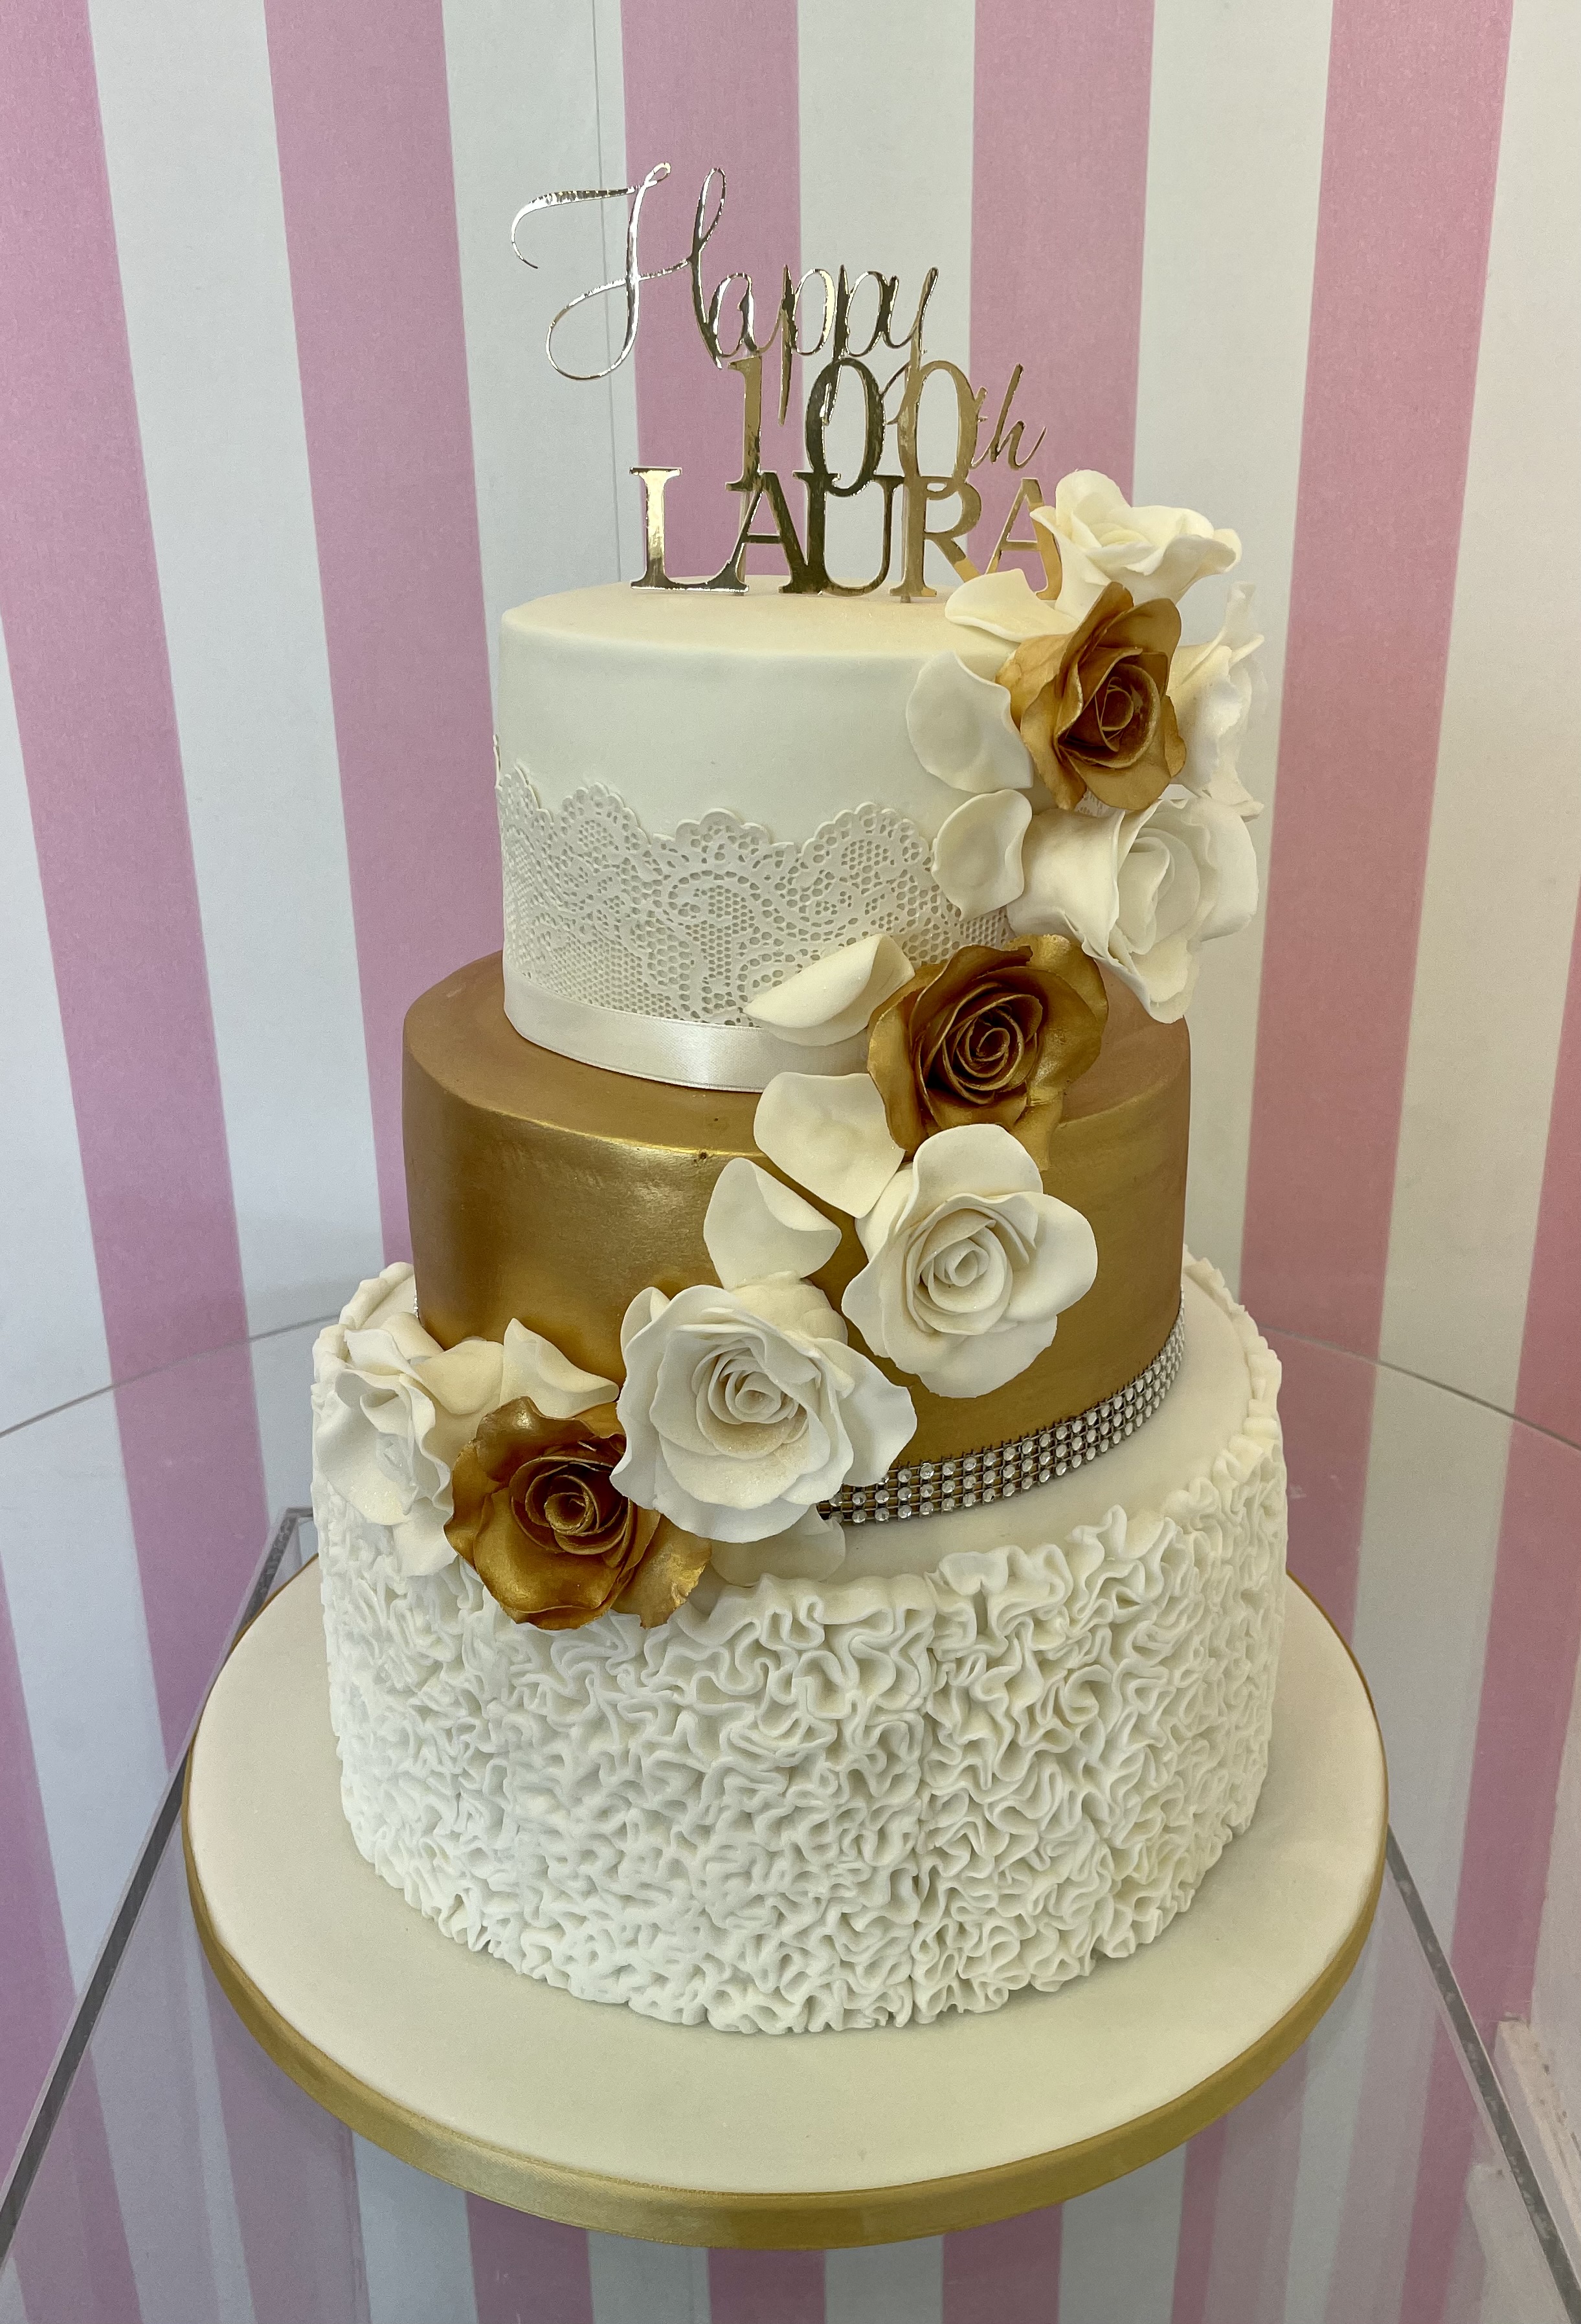 laura 100th Cake Cake | Celebration Cakes